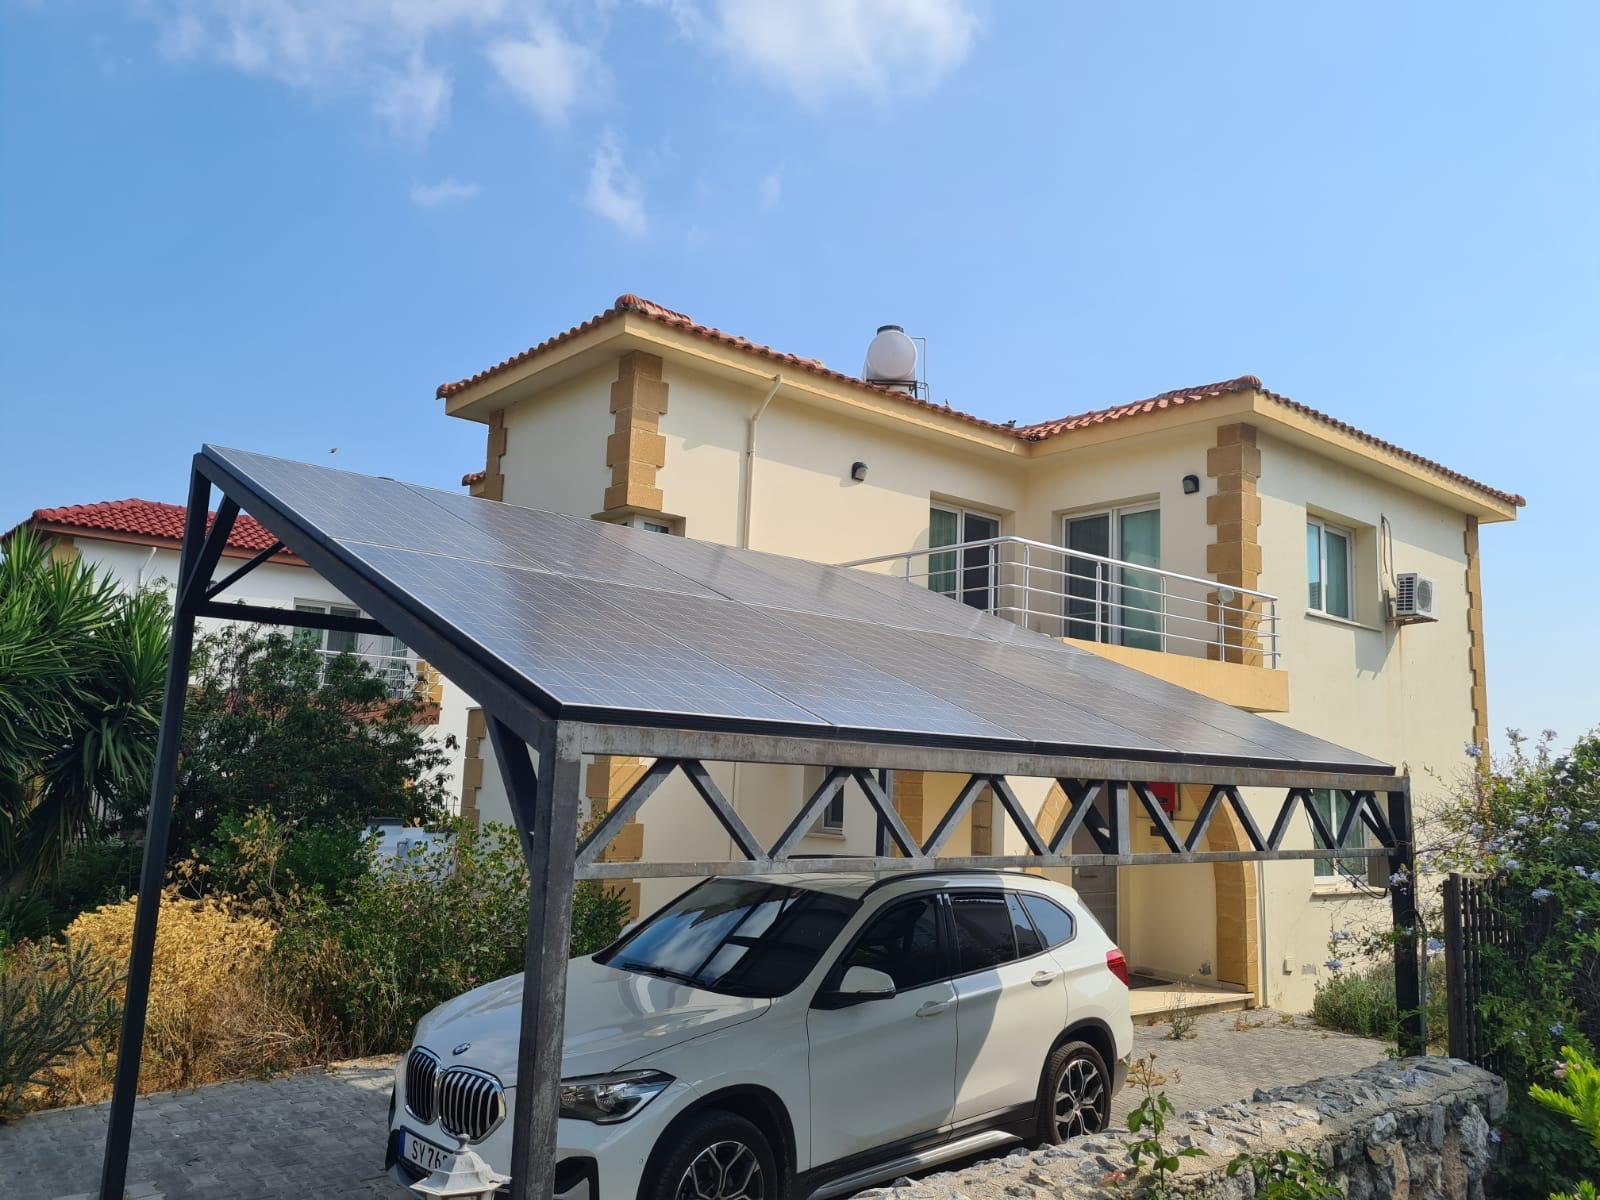 3 bedroom villa for sale in Kyrenia, Karshiyaka-570f8347-e52c-4eff-b169-a79a87699af4